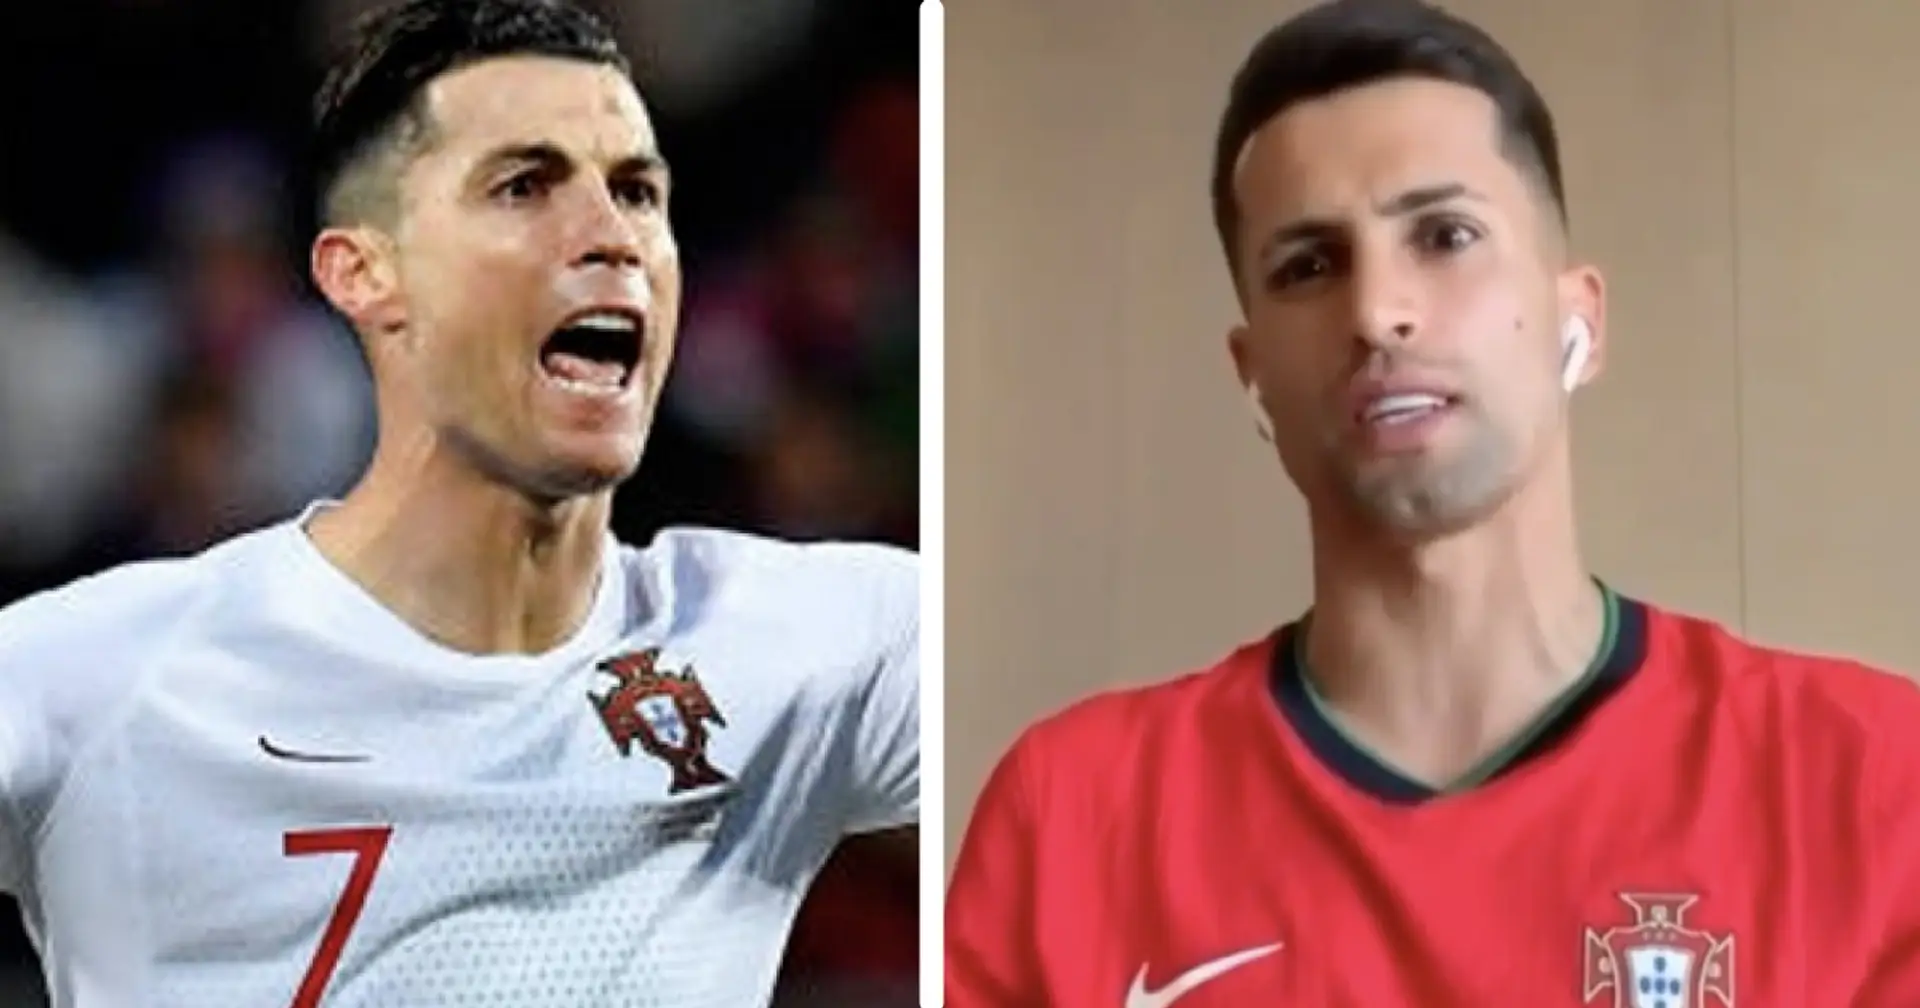 "Le pic de carrière d'un joueur est compris entre 25 et 32 ans": Joao Cancelo minimise le rôle de Cristiano Ronaldo au Portugal